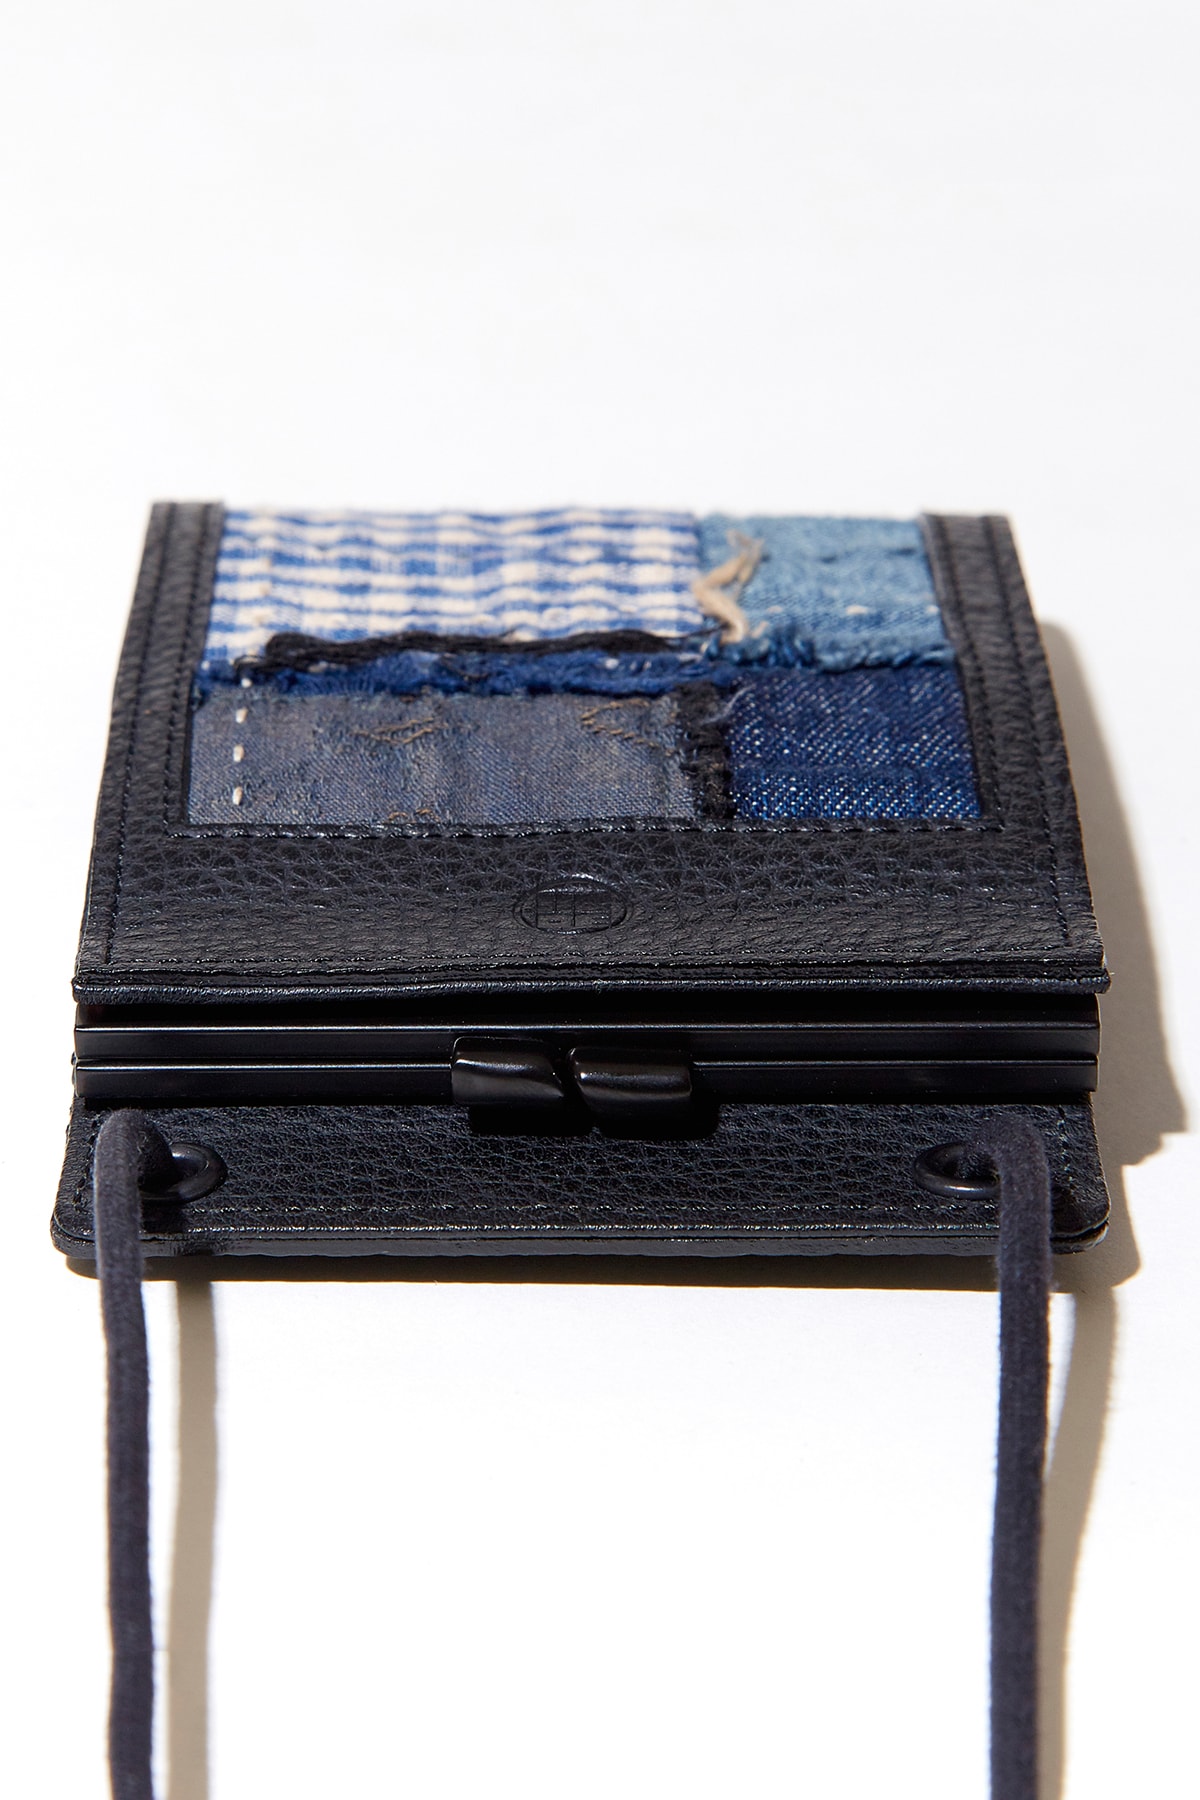 KUON 攜手日本配件品牌 yorozu 打造首款背掛式錢包